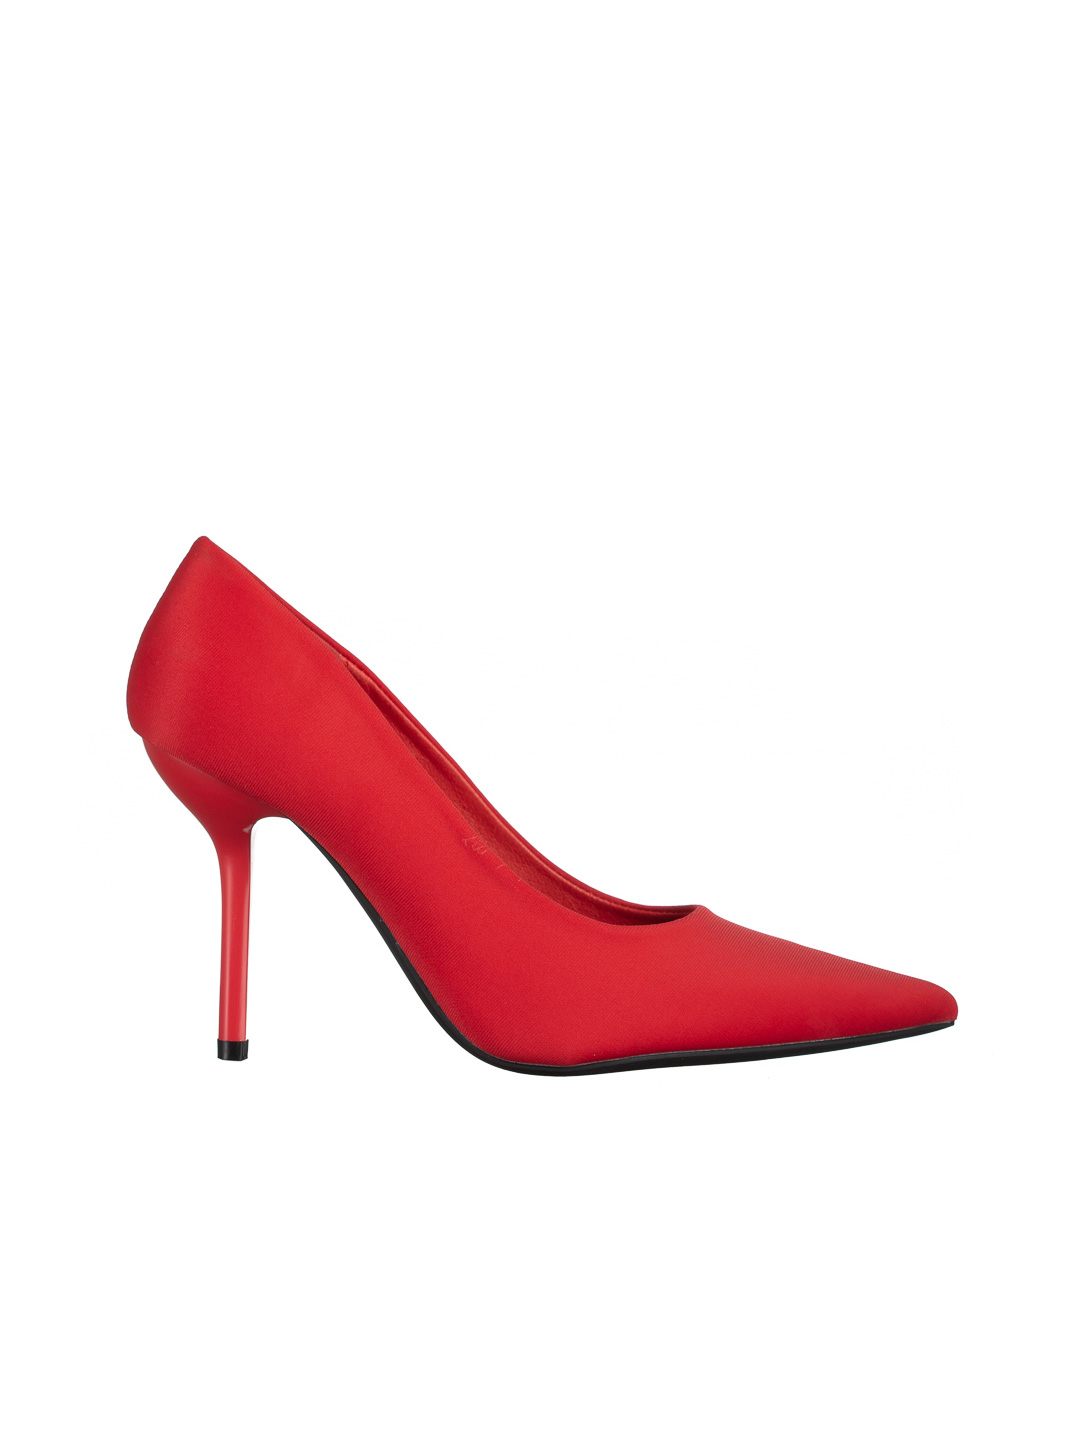 Emelda piros női cipő, textil anyagból készült, 7 - Kalapod.hu